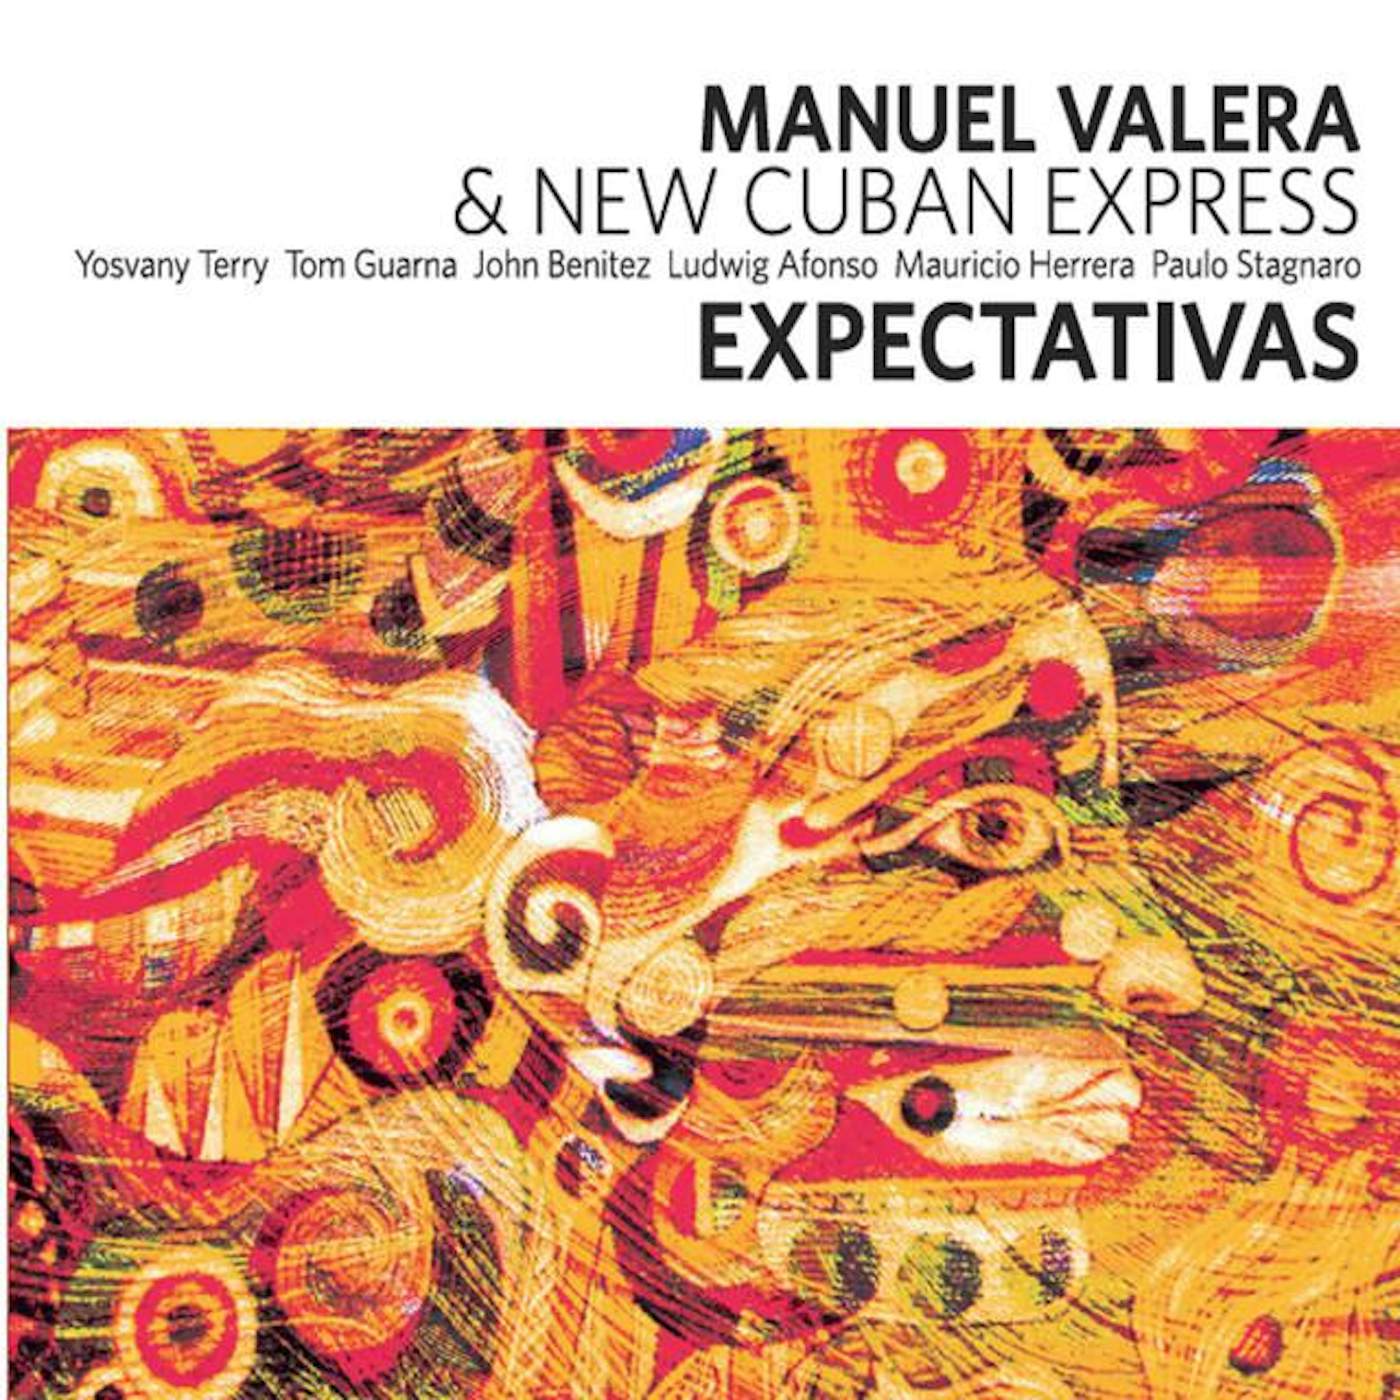 Manuel Valera